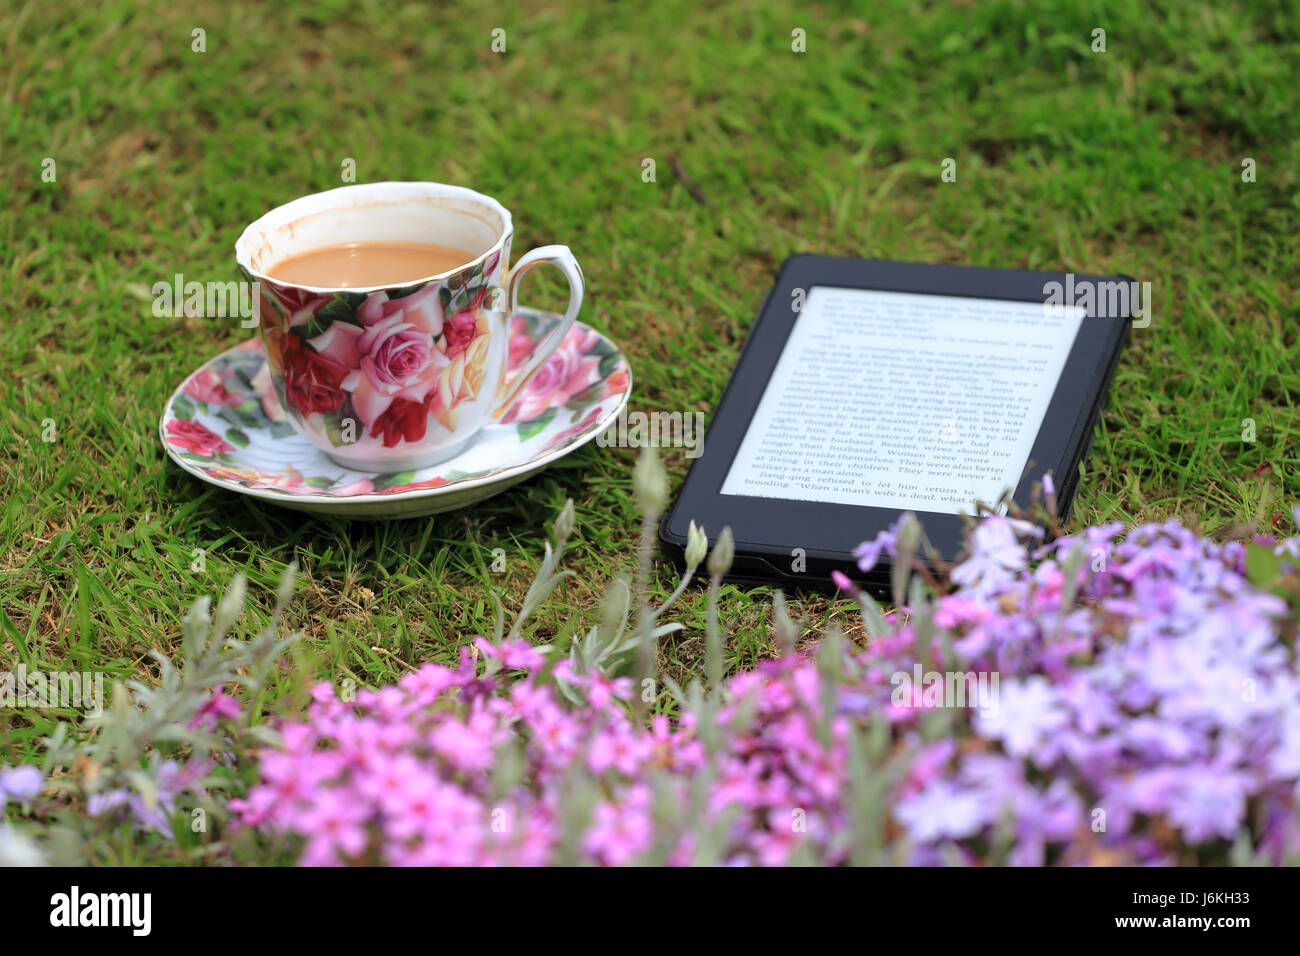 Ein e-Book-Reader und eine Tasse Kaffee auf dem Rasen Stockfoto